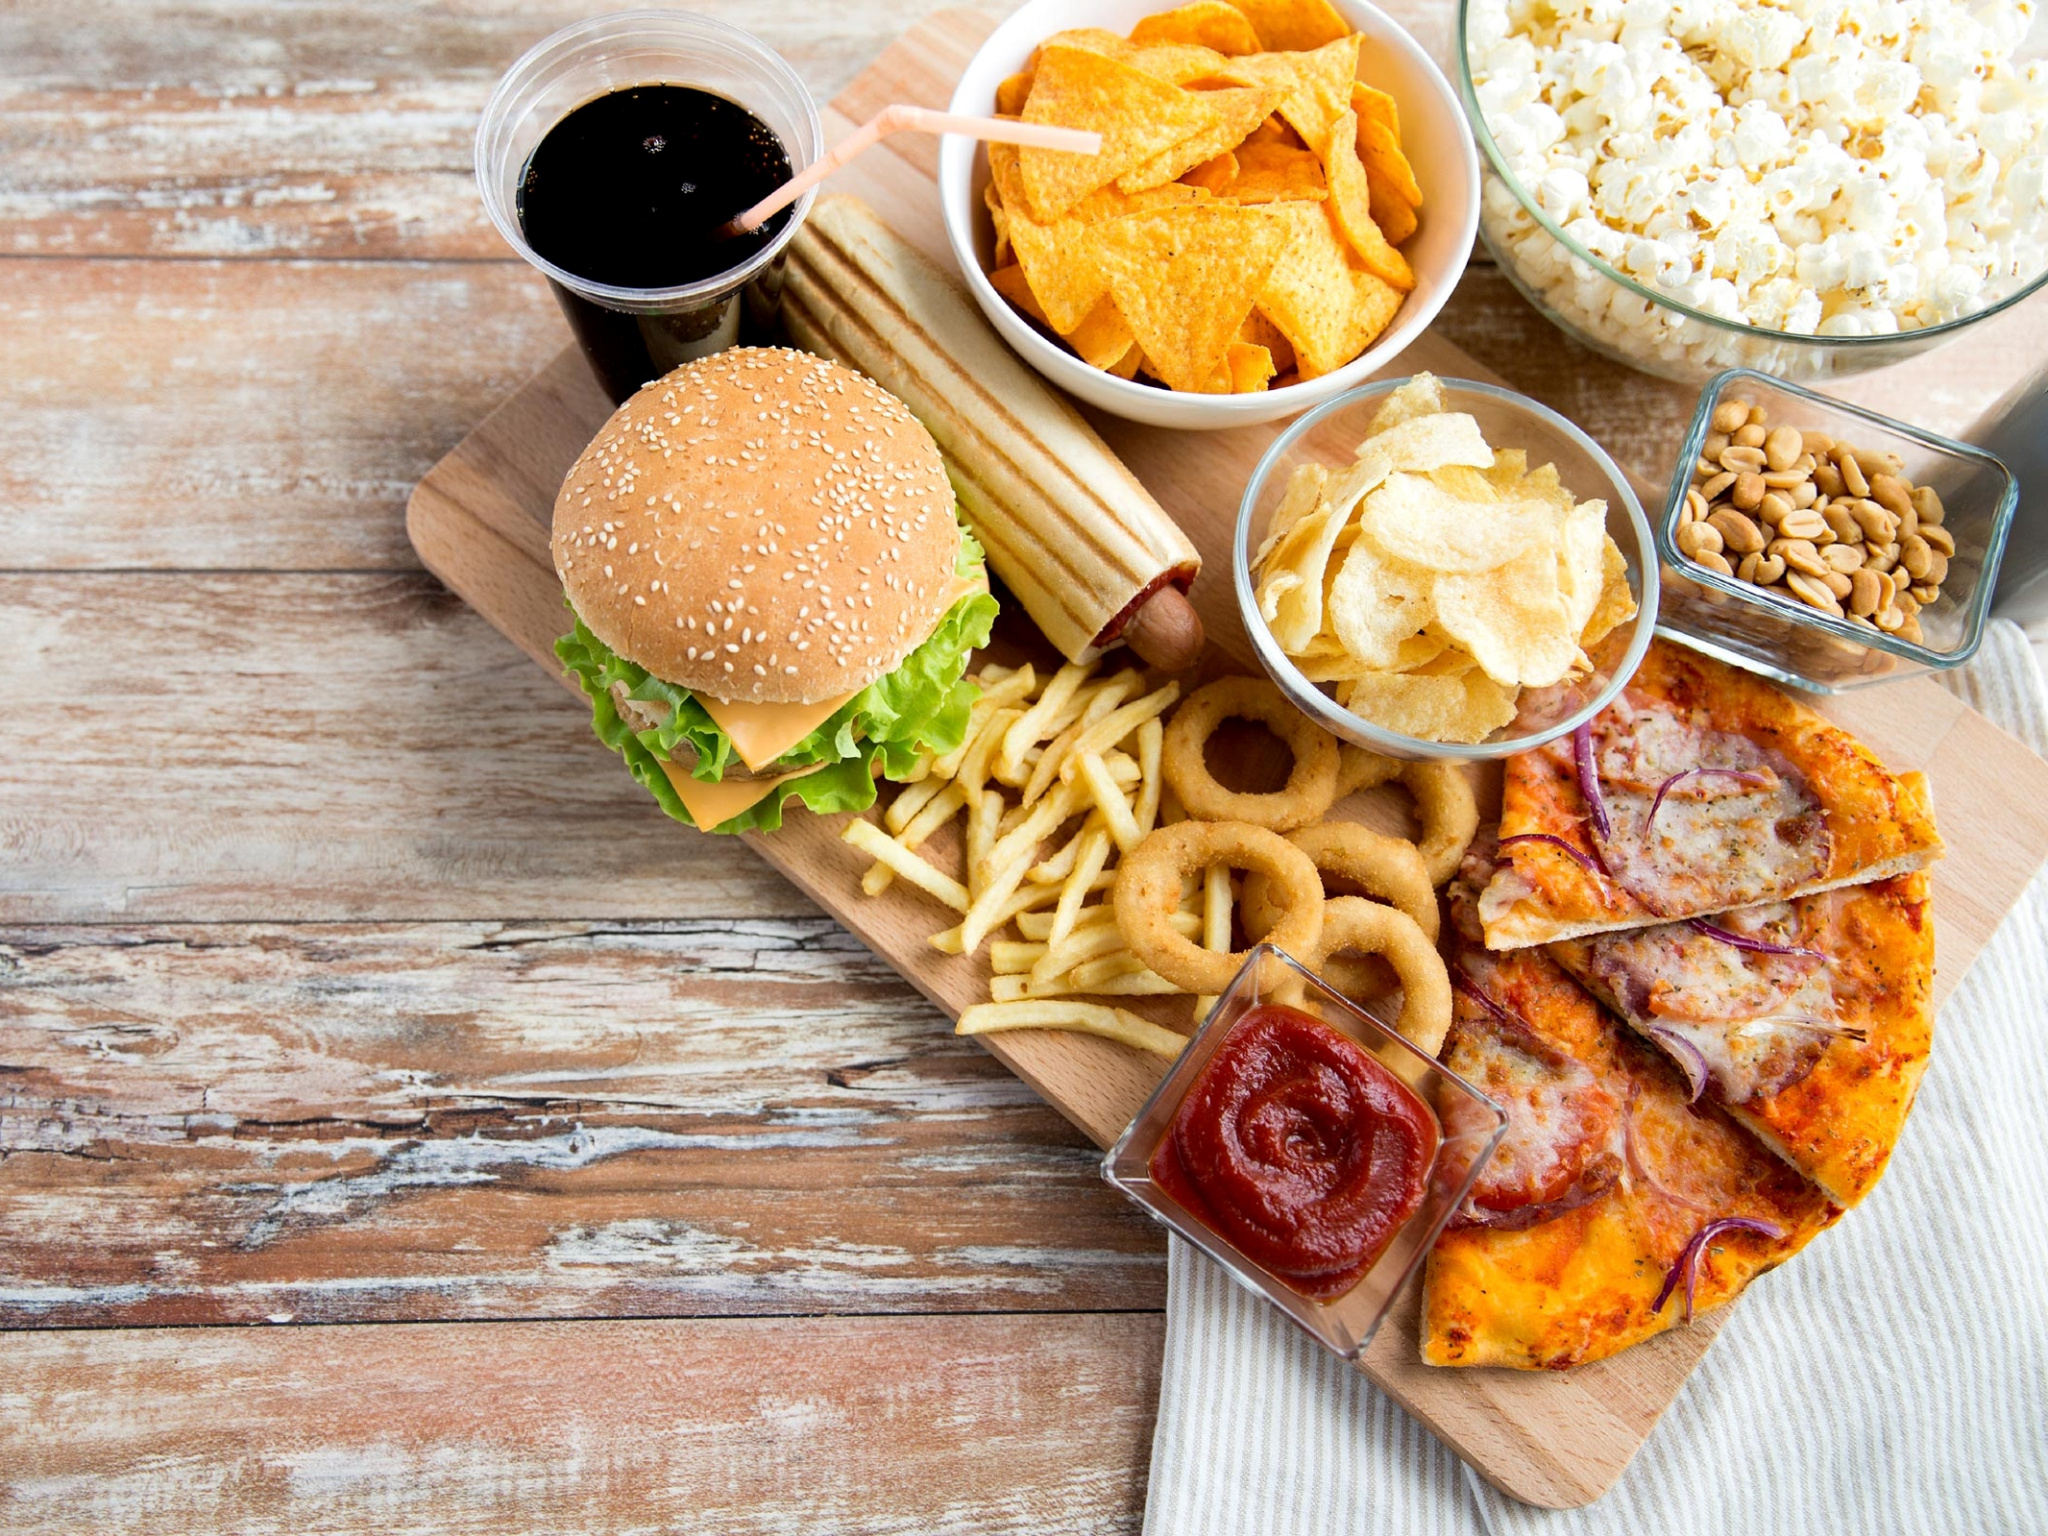 American Food, Kfc, Junk Food, Foodie, Brunch Wallpaper - Before Sleep Meal , HD Wallpaper & Backgrounds